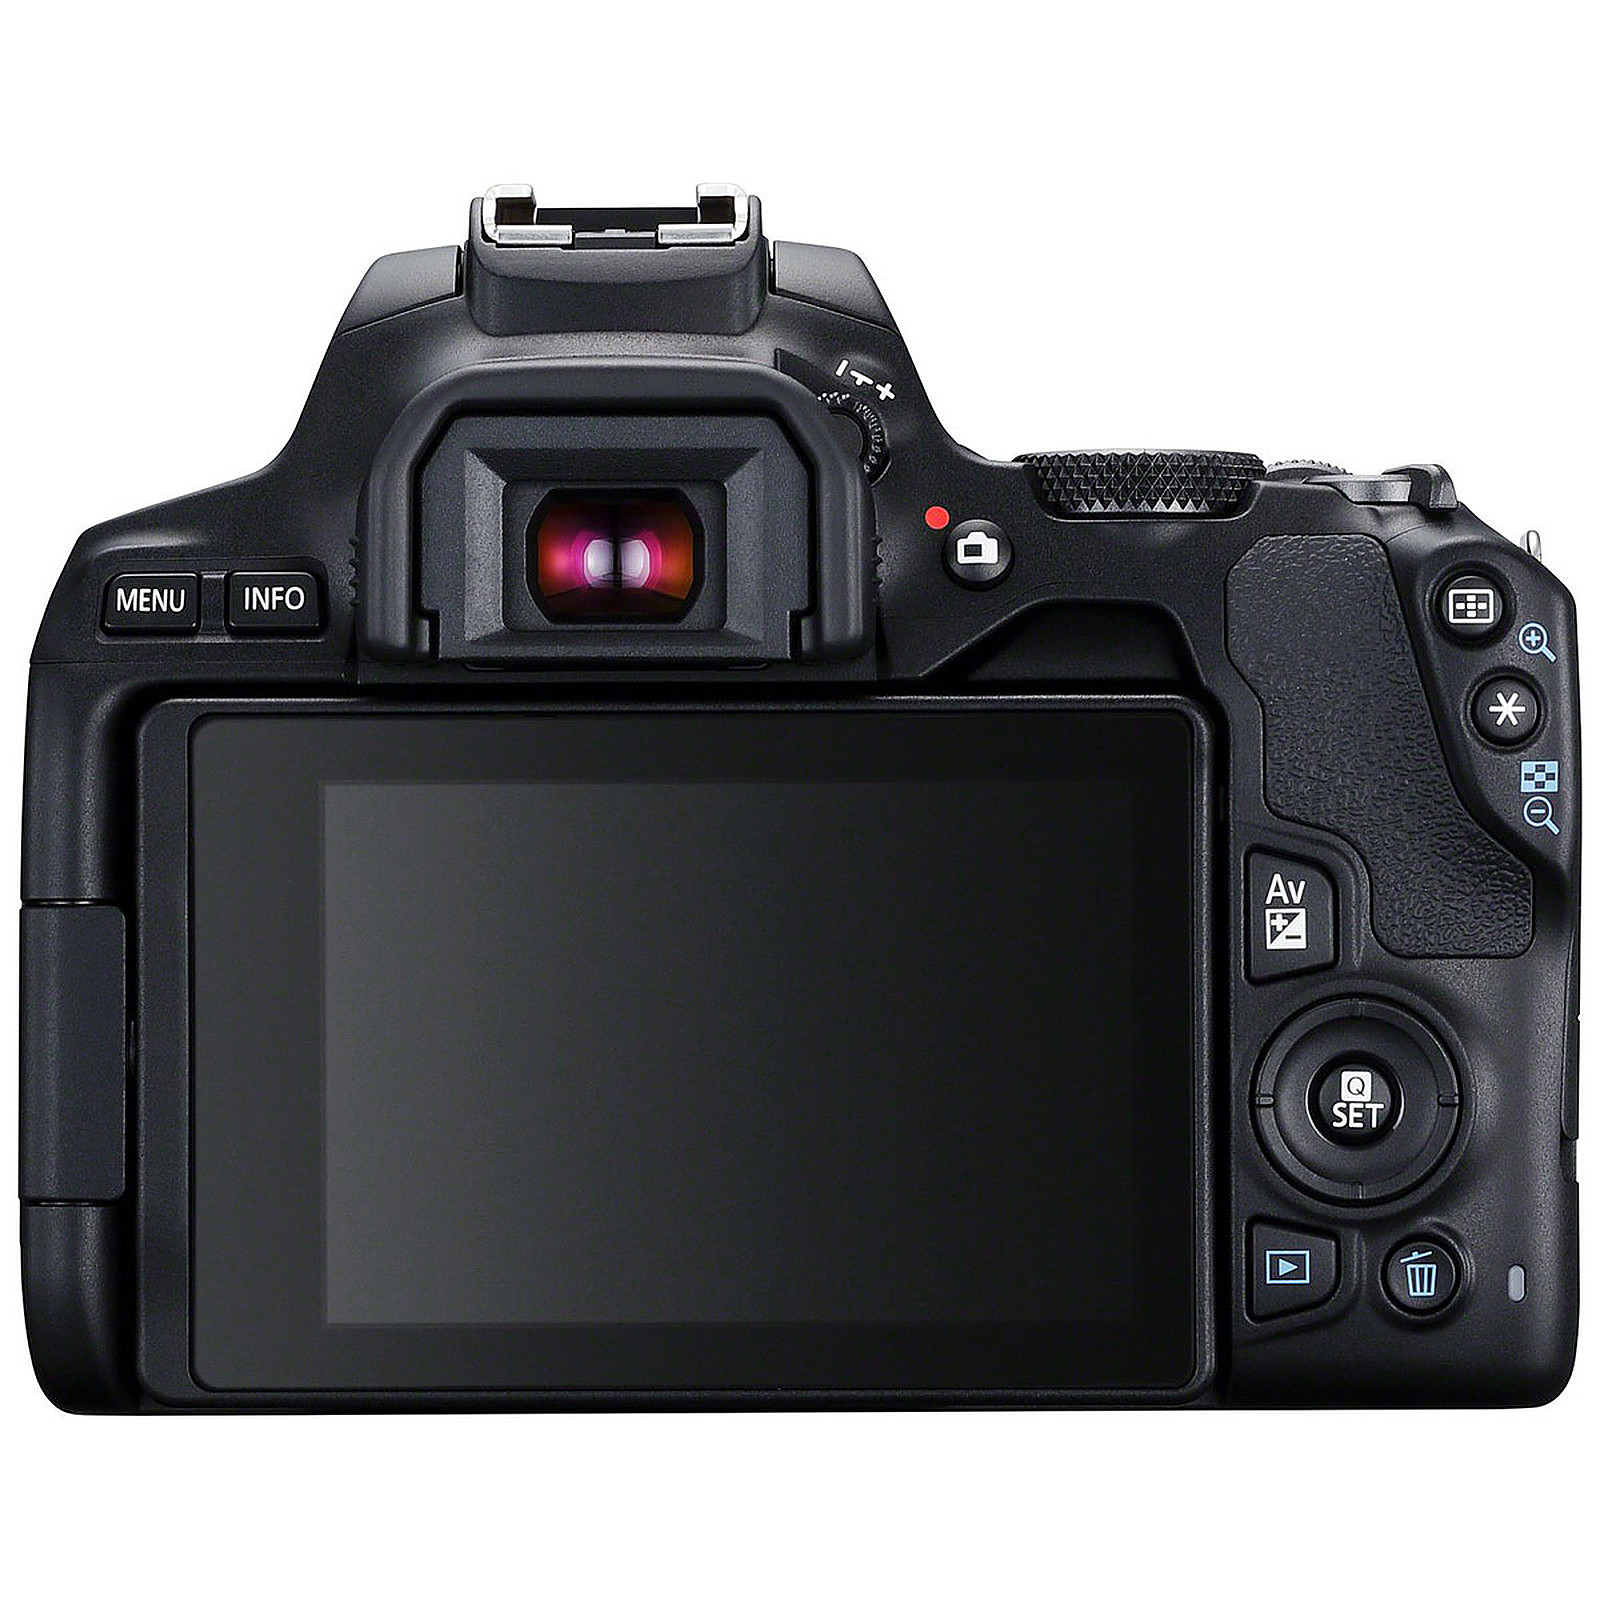 Câmera Canon Eos 250d: Ficha Técnica, Onde Comprar, Preço E Principais Informações